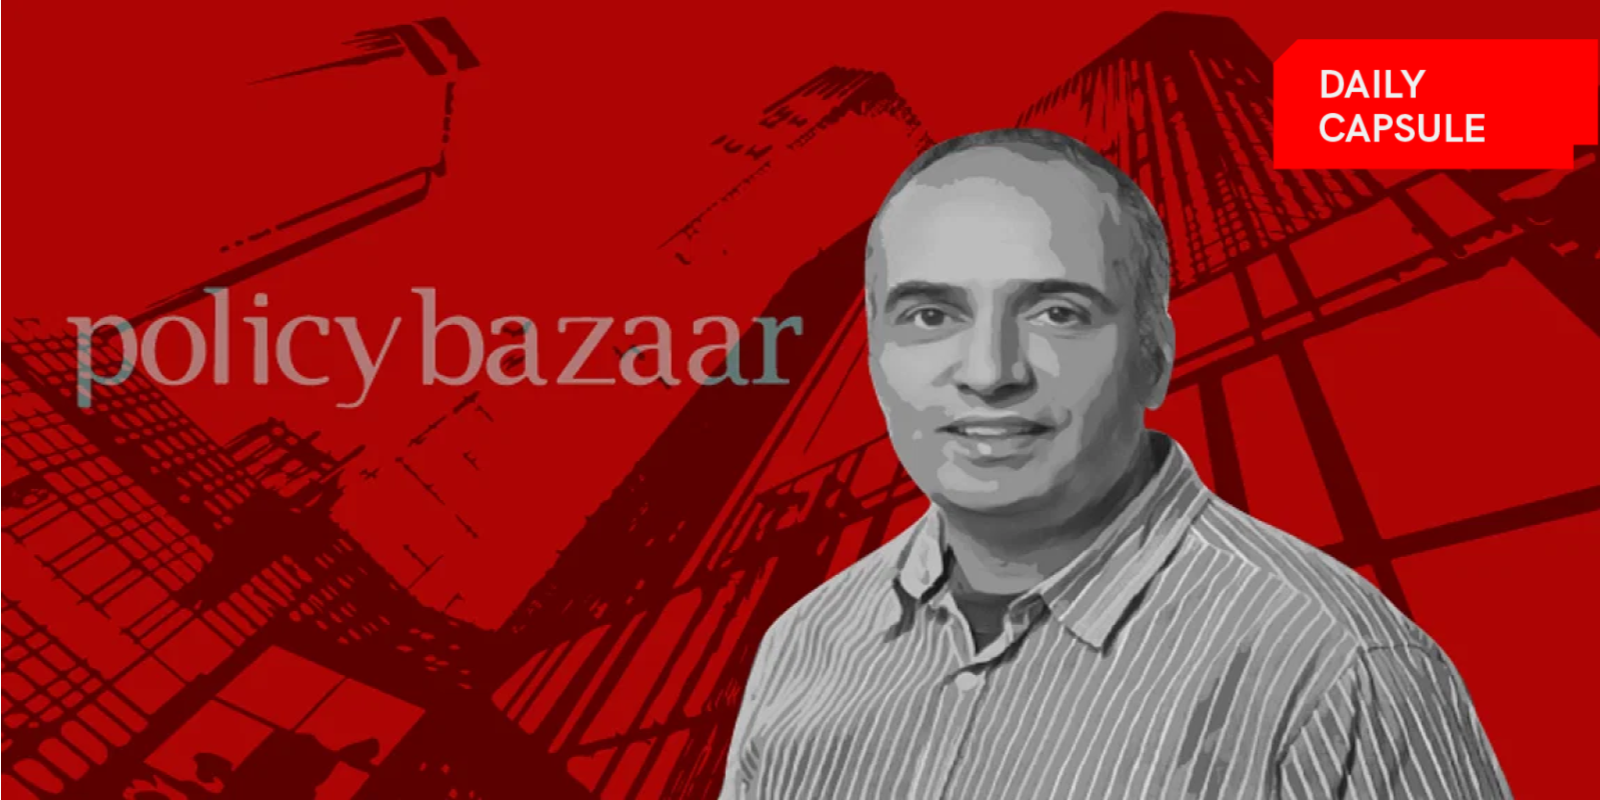 Policybazaar aims for profitability